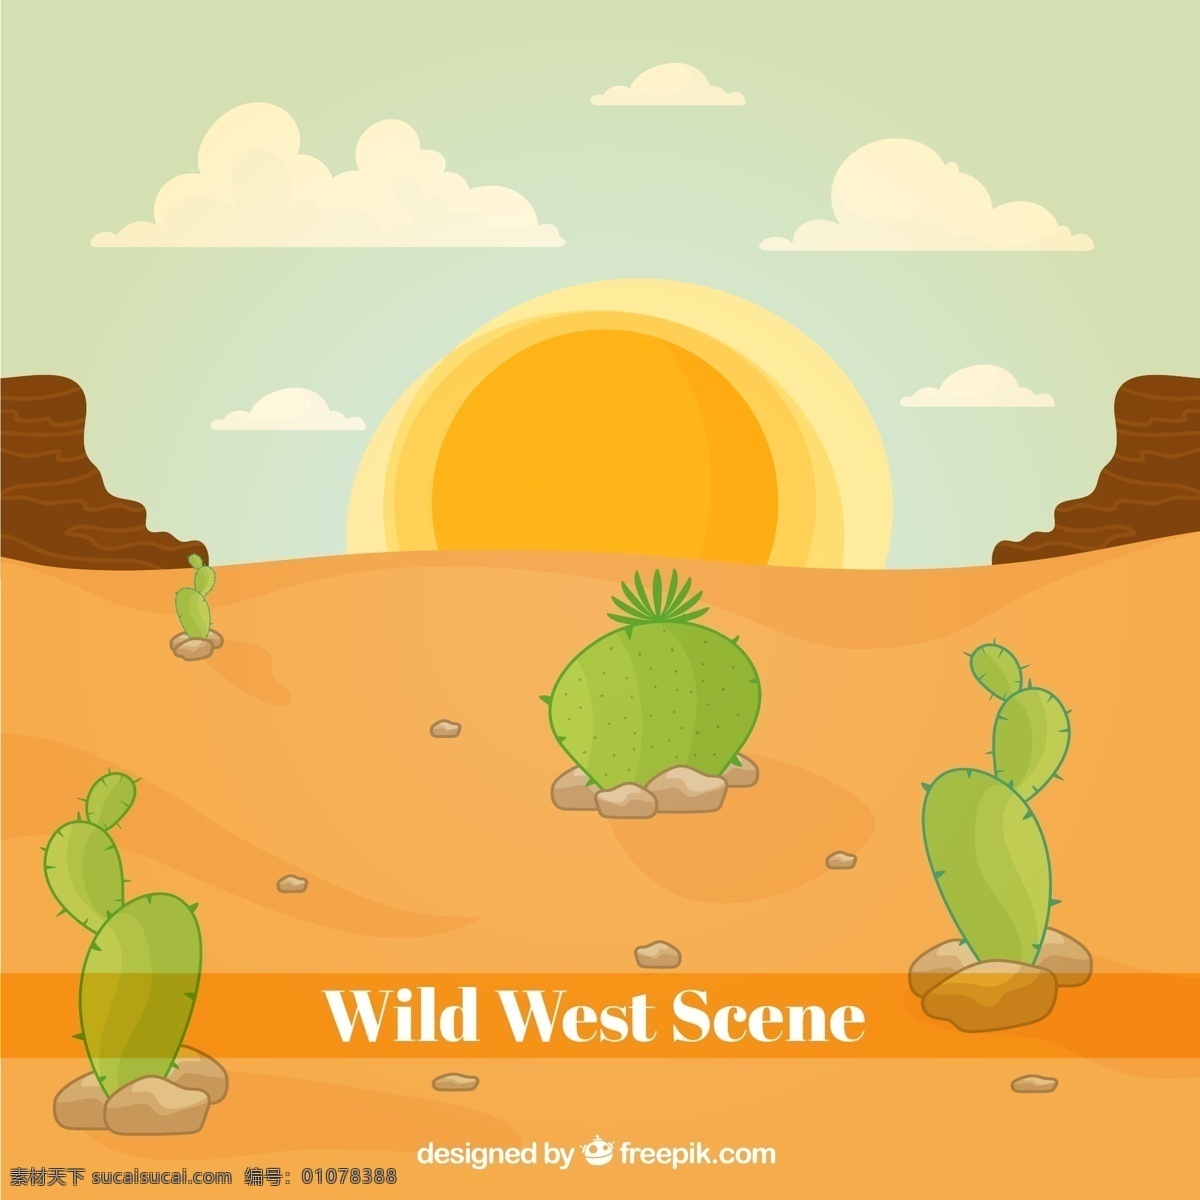 手绘 沙漠 植被 背景 手绘沙漠 植被背景 太阳 西部风景 西部 矢量图 云朵